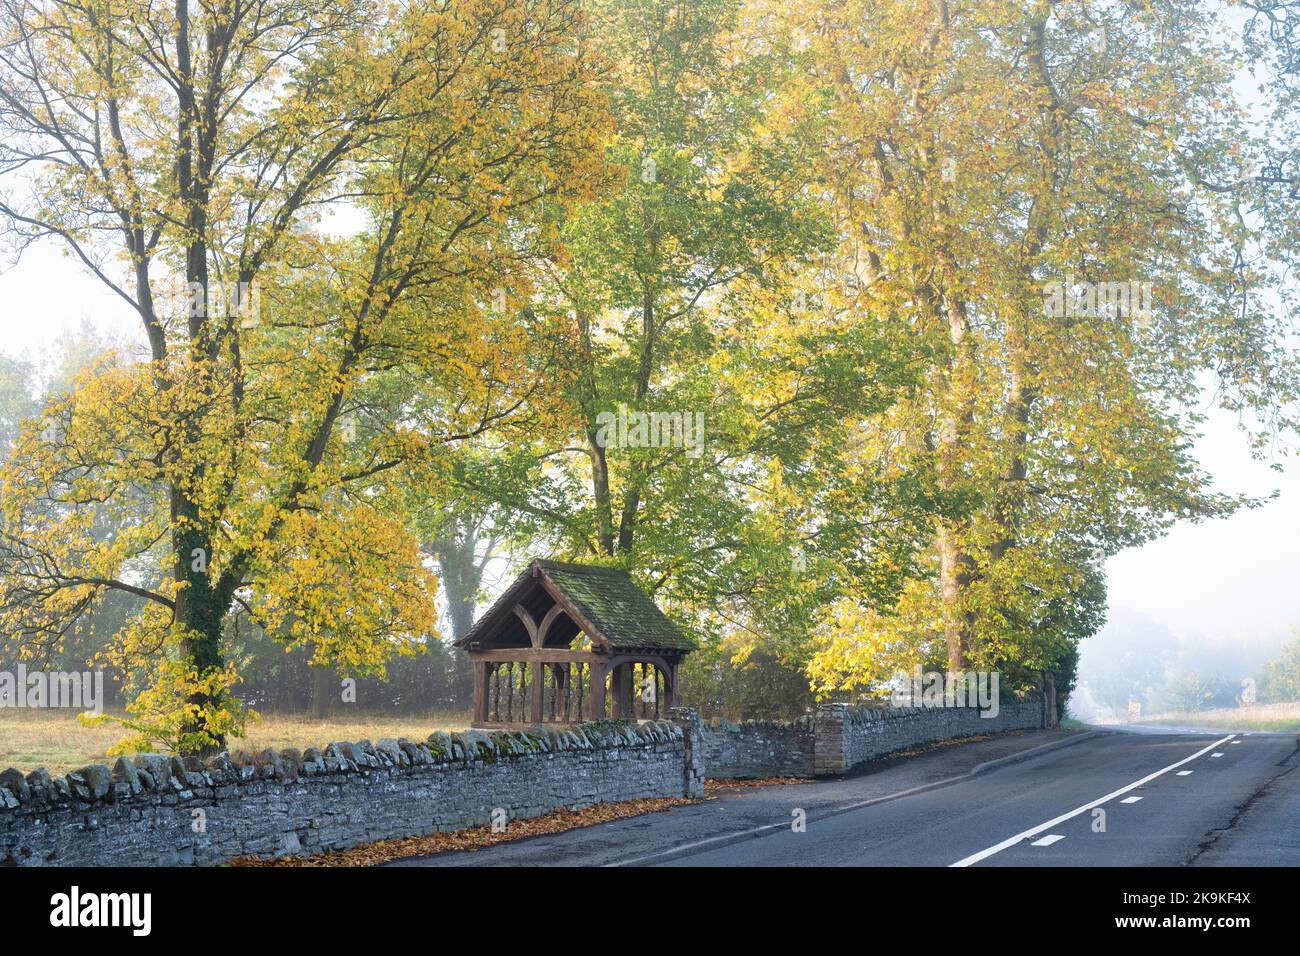 Cimetière de Shobdon dans la brume d'automne, Herefordshire, Angleterre Banque D'Images